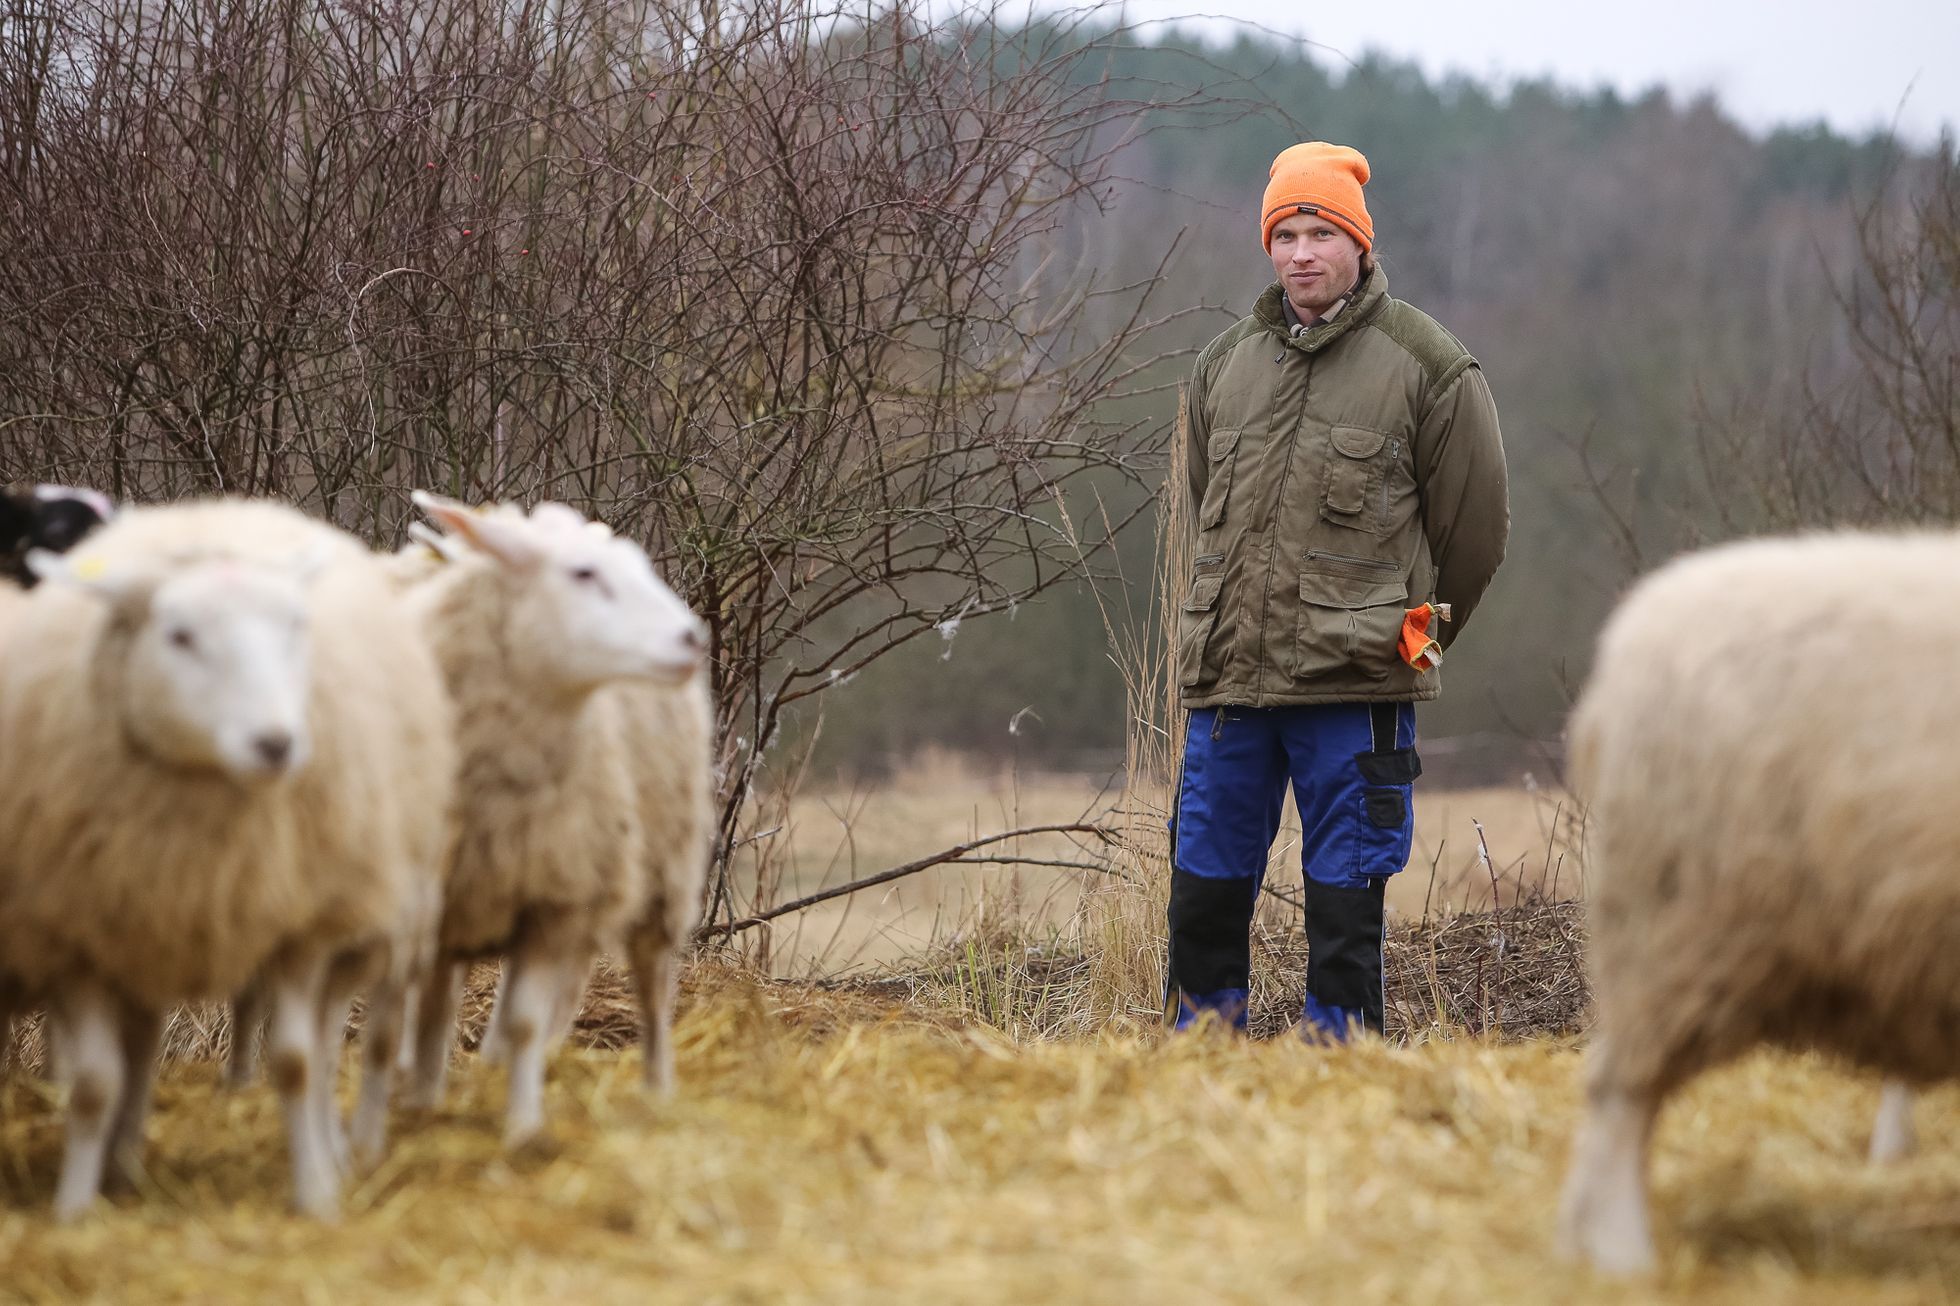 Ovce nespásají louky jen na horách, ale i v Praze. Pastevectví je českou raritou, říká zemědělec